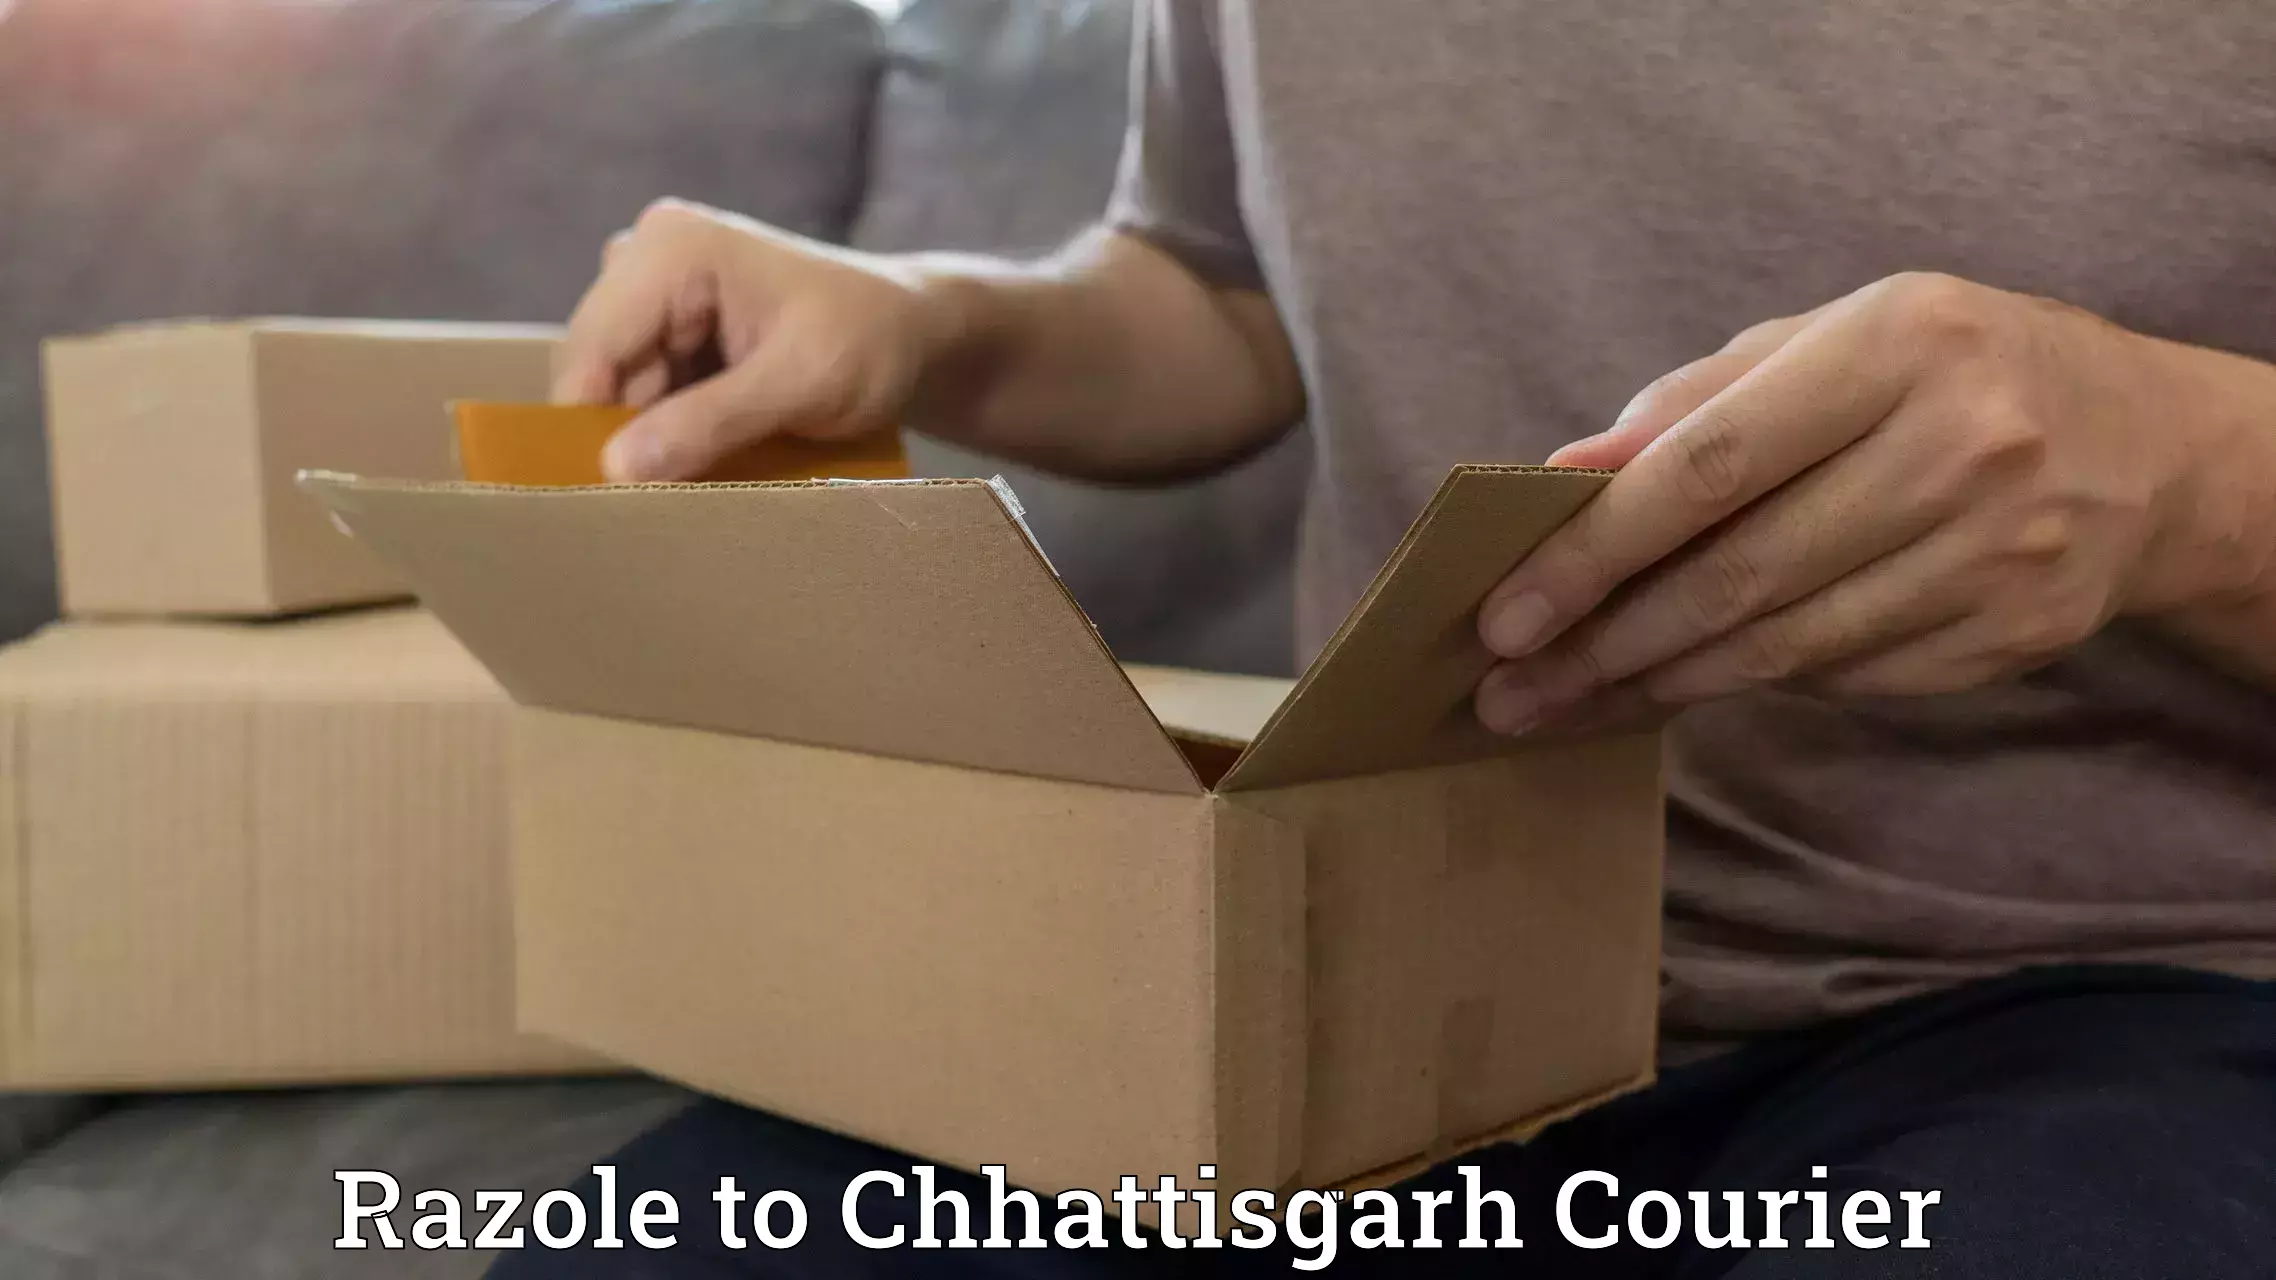 Professional delivery solutions Razole to Patna Chhattisgarh